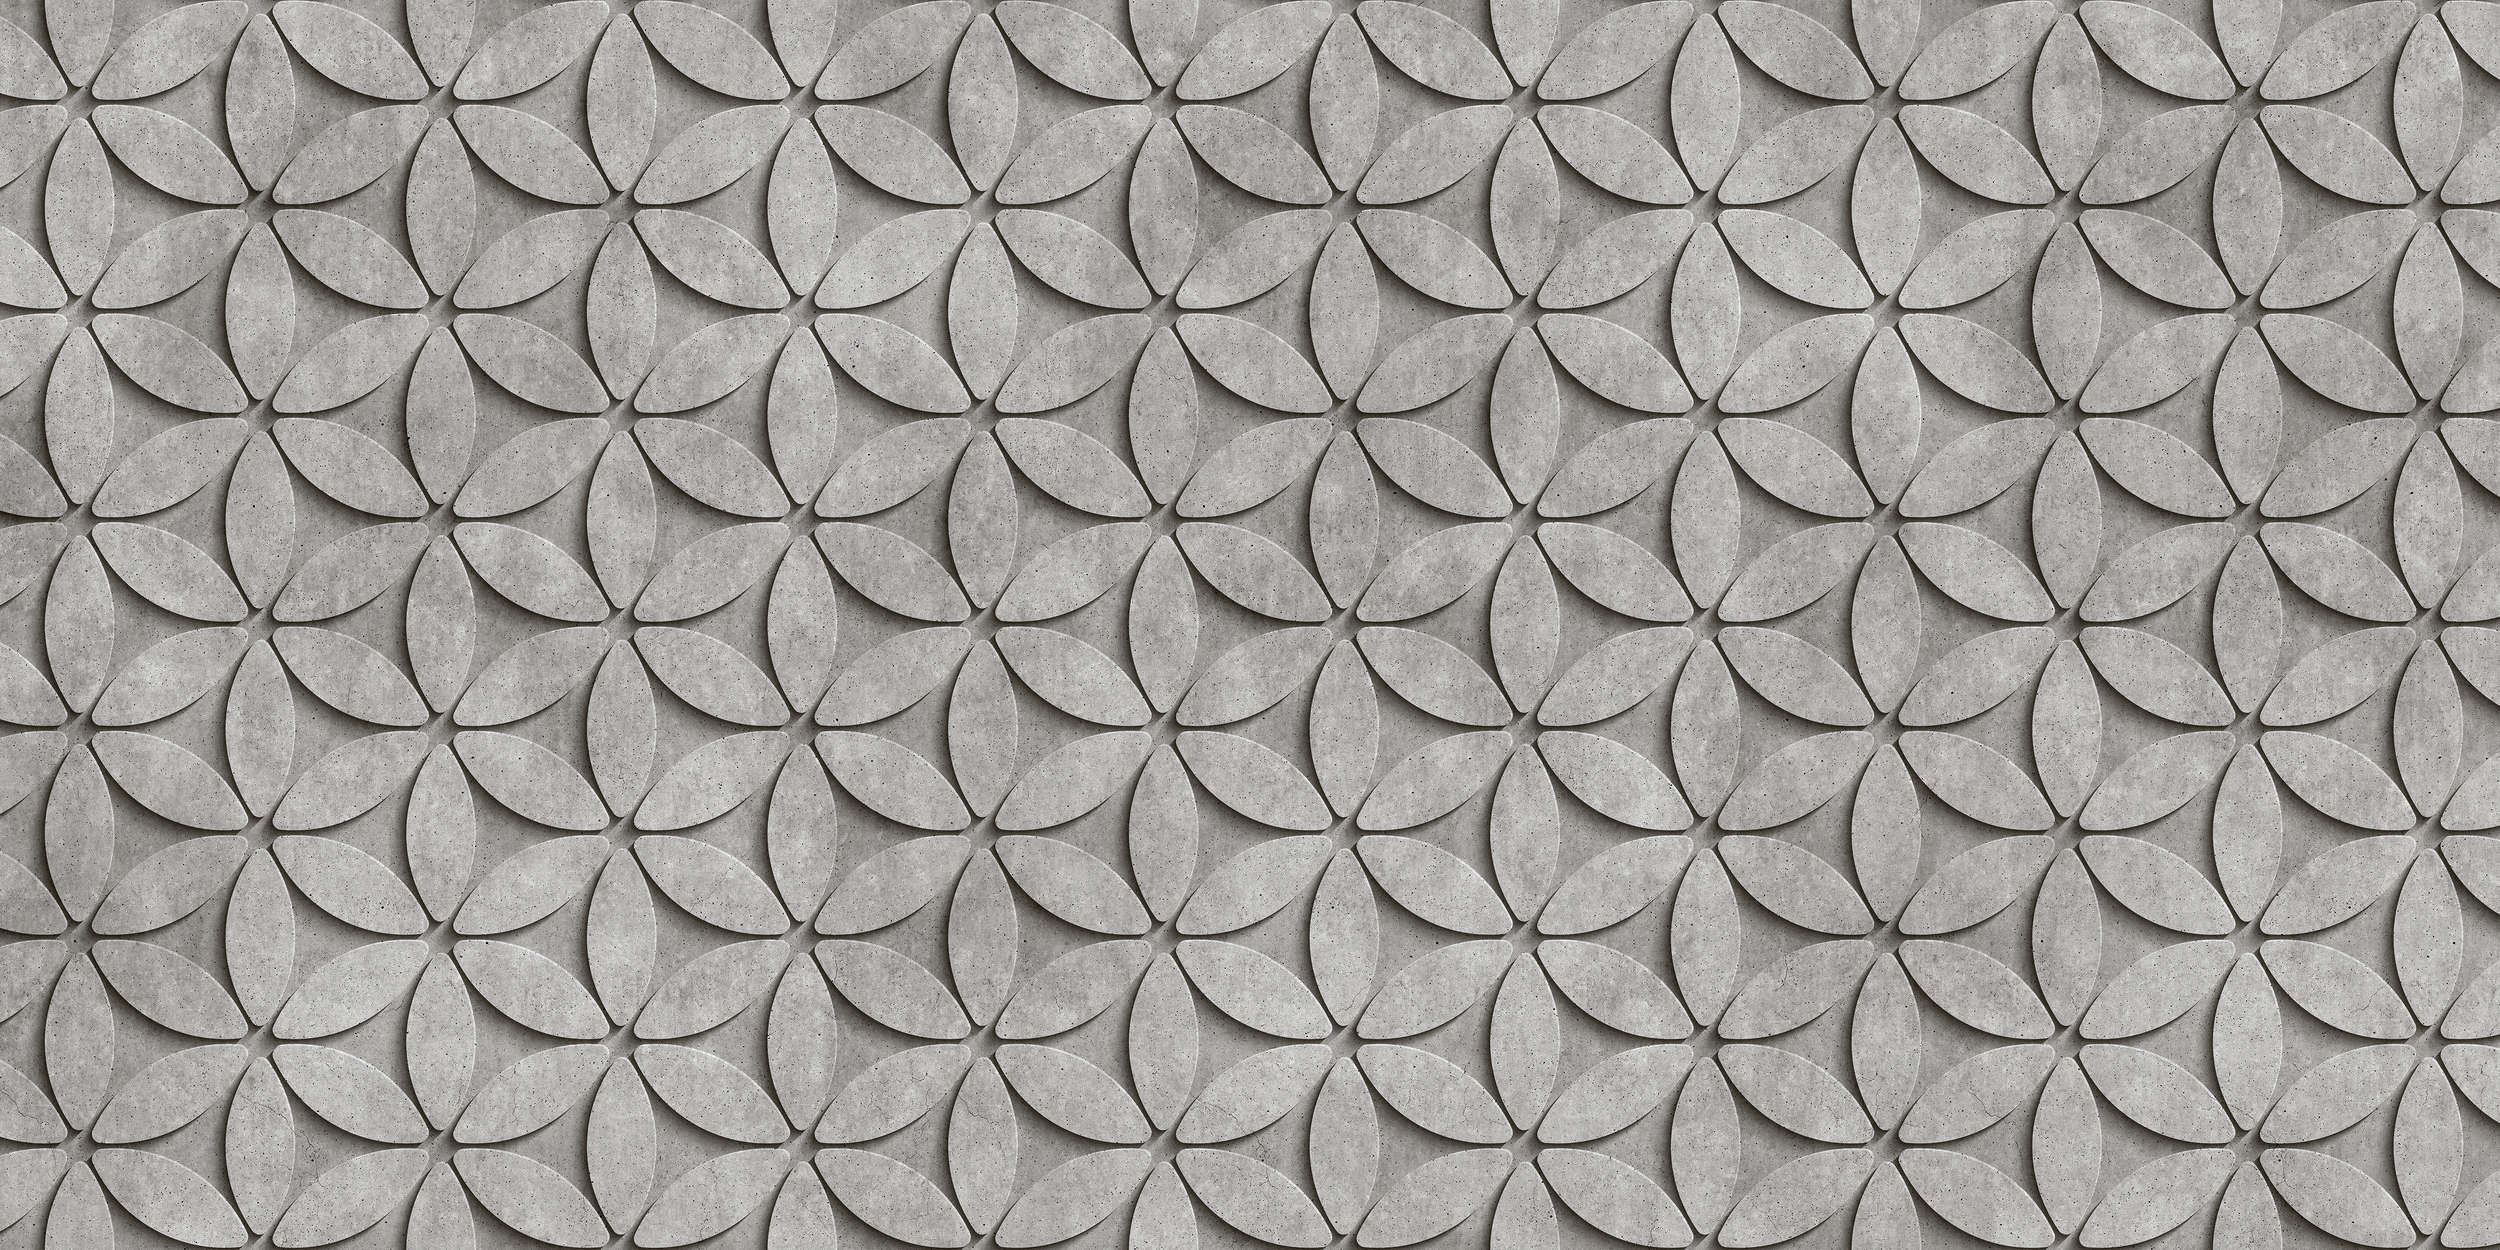             Tile 1 - Cool 3D Concrete Polygons Wallpaper - Grey, Black | Matt Smooth Non-woven
        